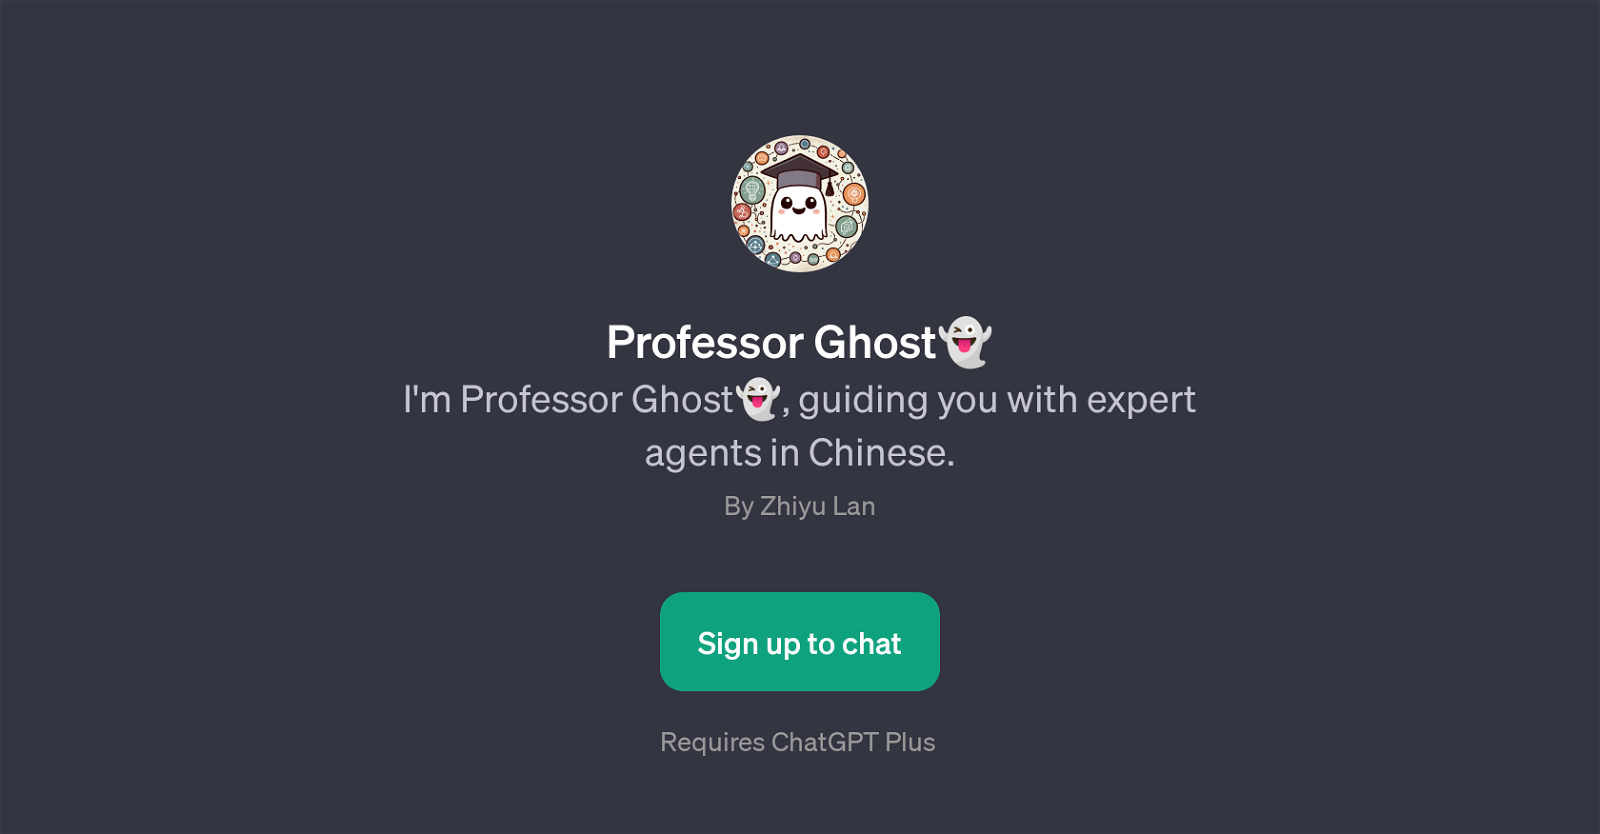 Professor Ghost website